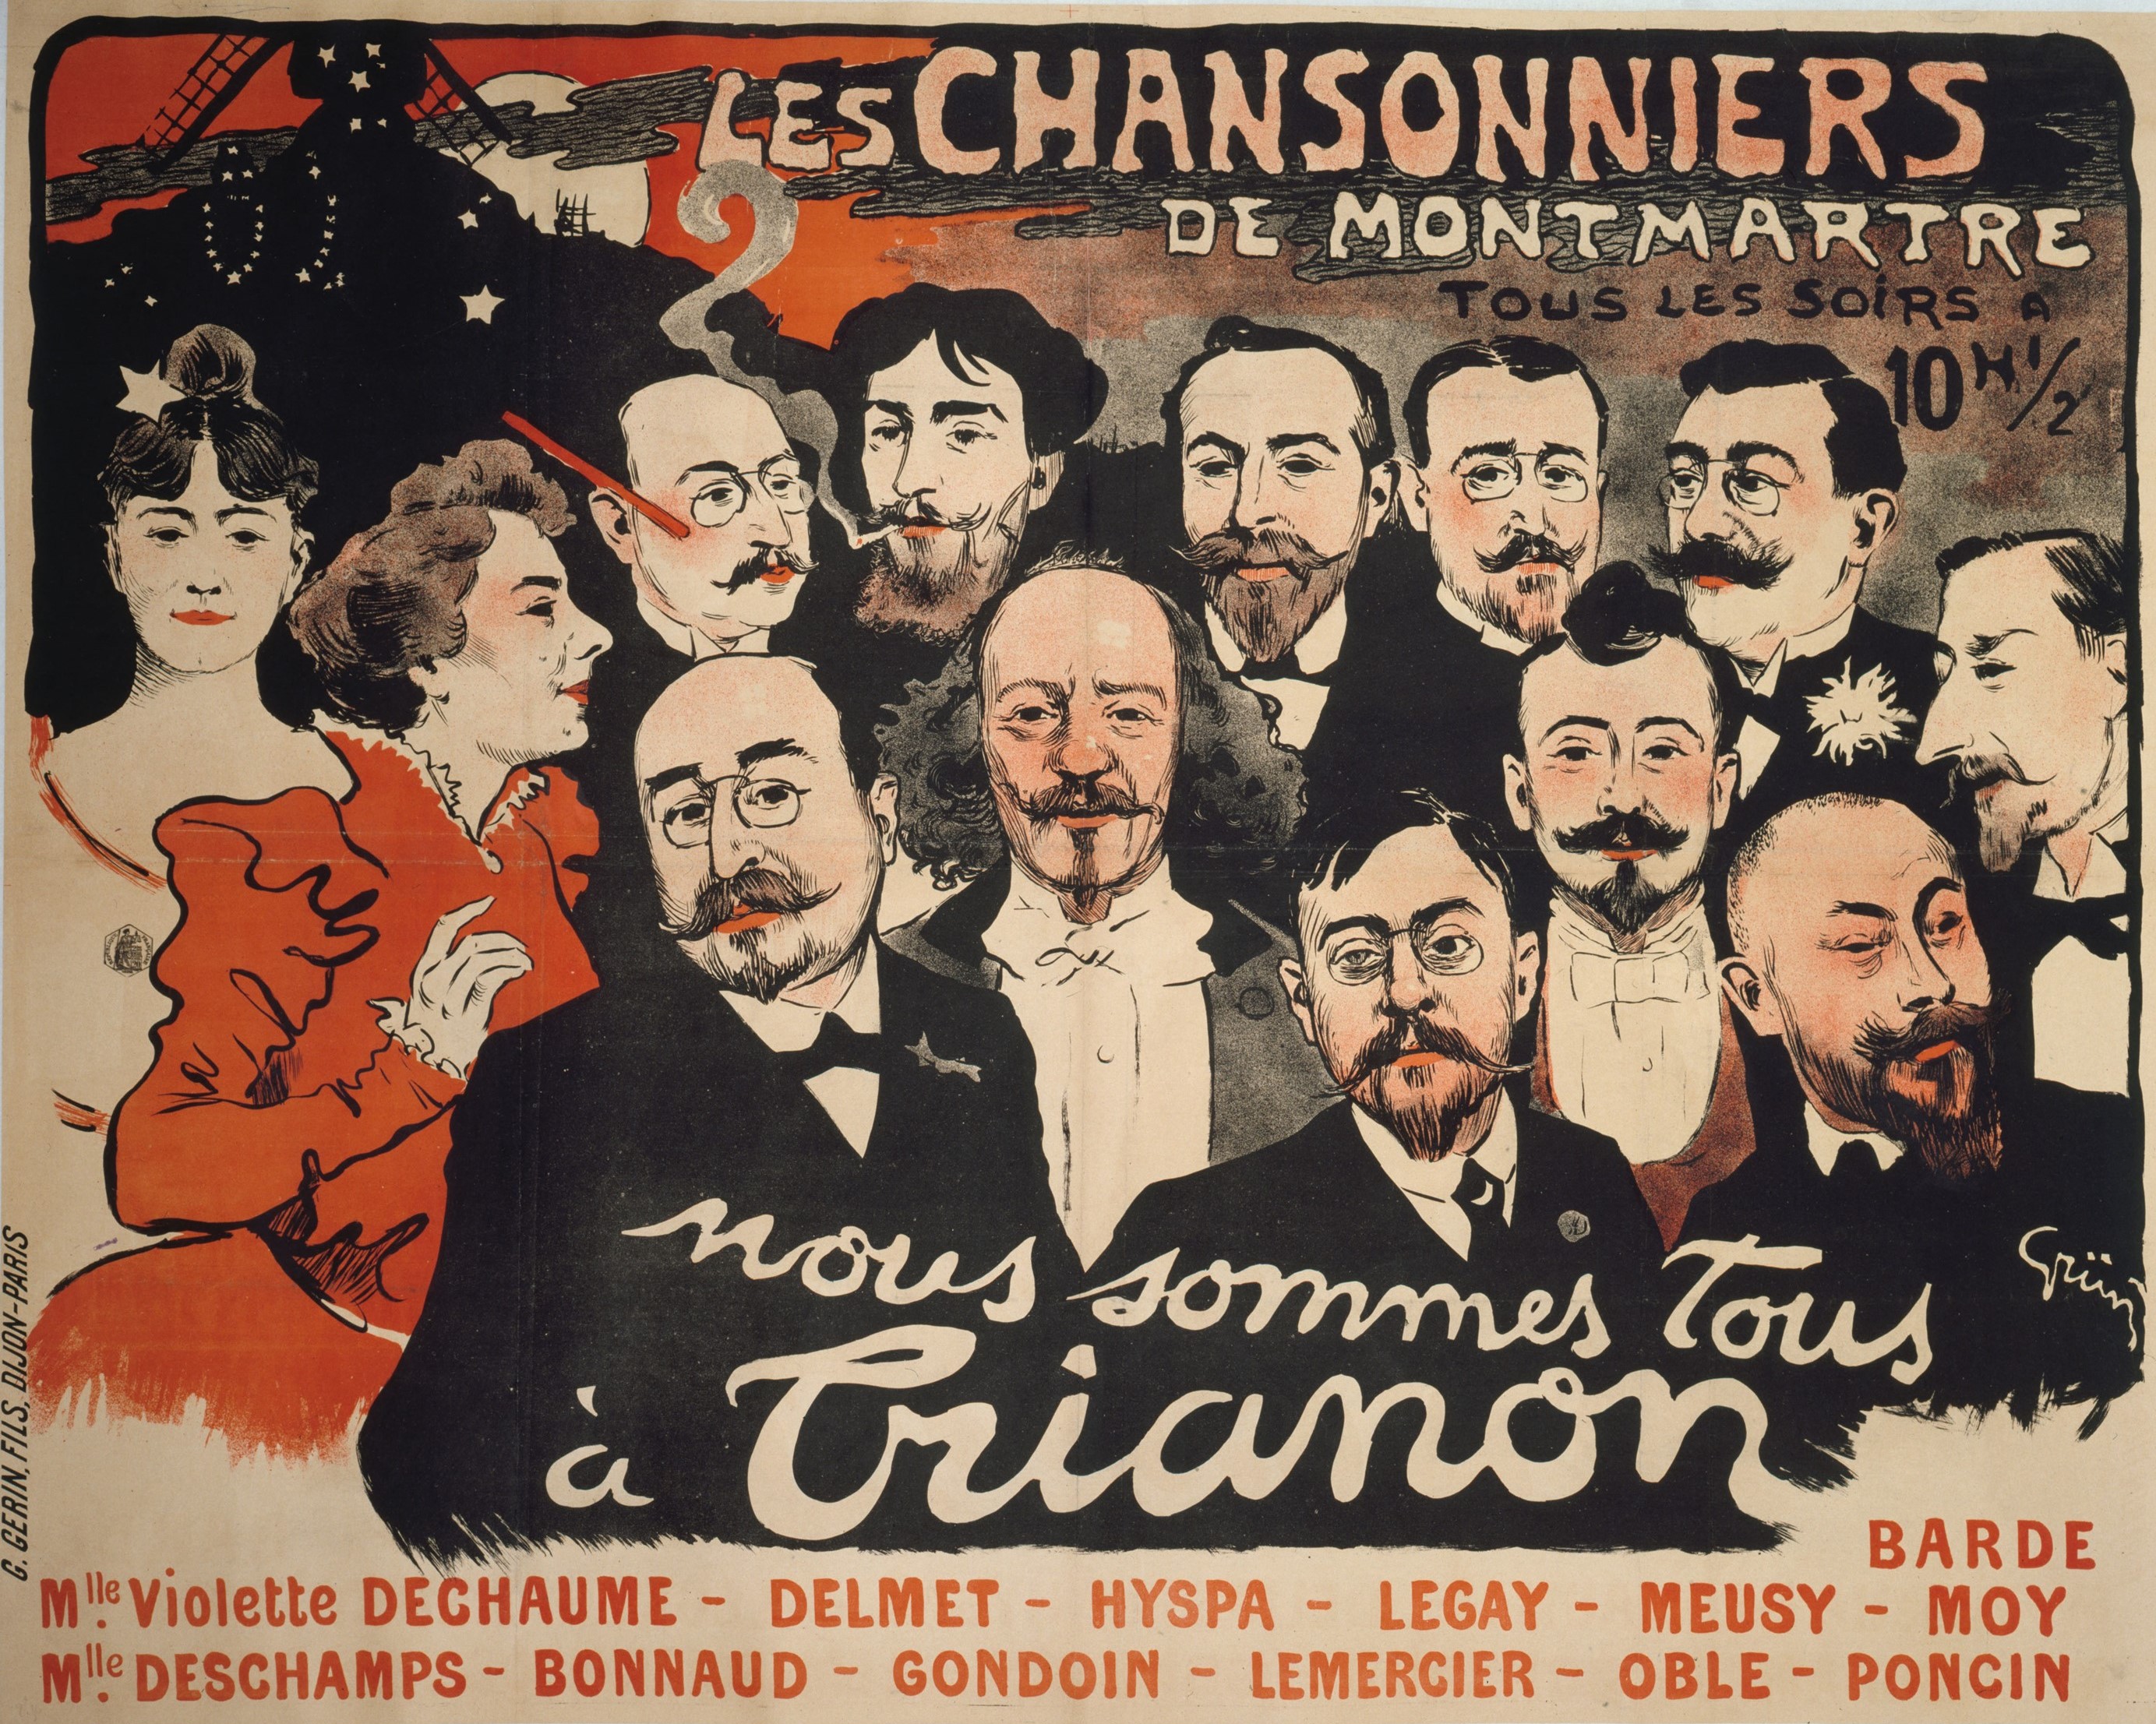 Les Chansonniers de Montmartre – "Nous sommes tous au Trianon", 1897